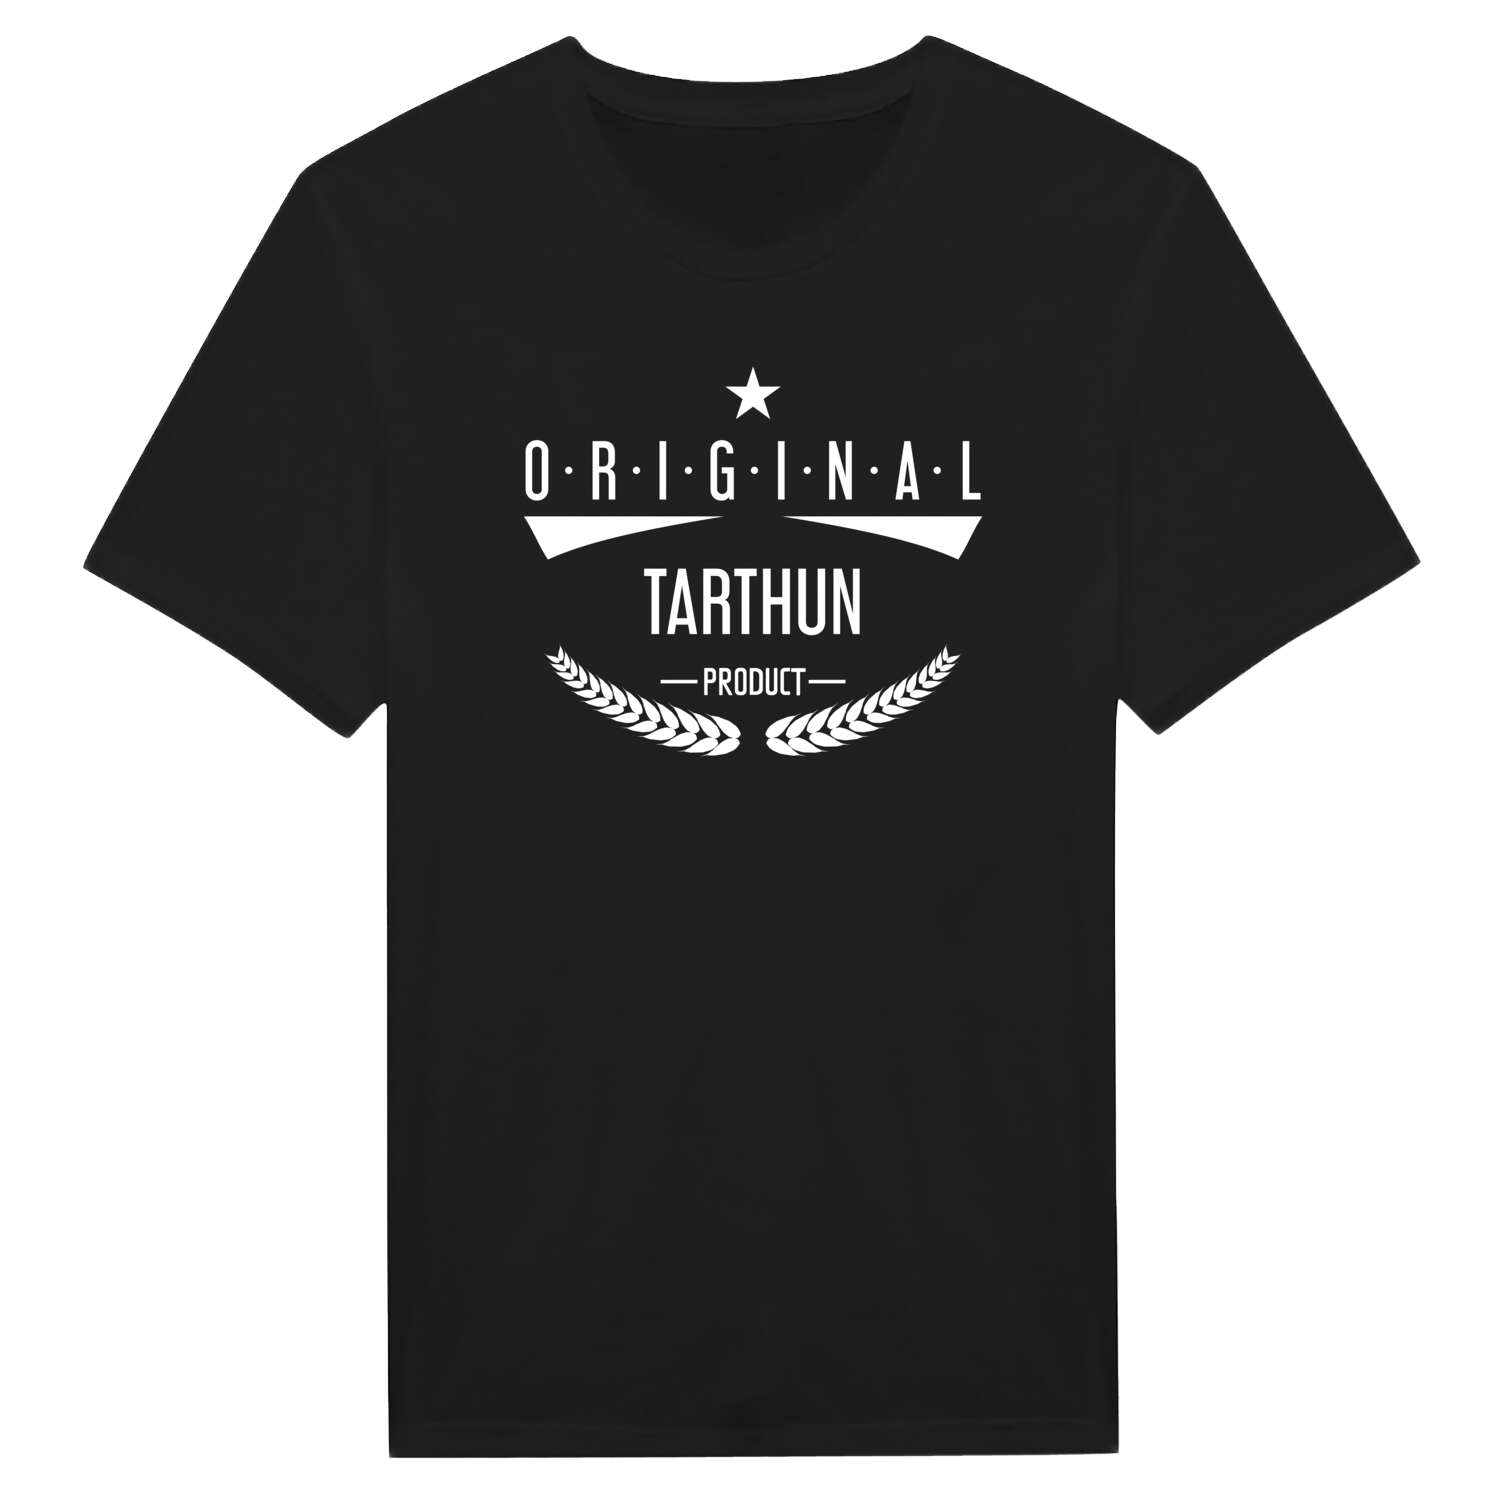 Tarthun T-Shirt »Original Product«